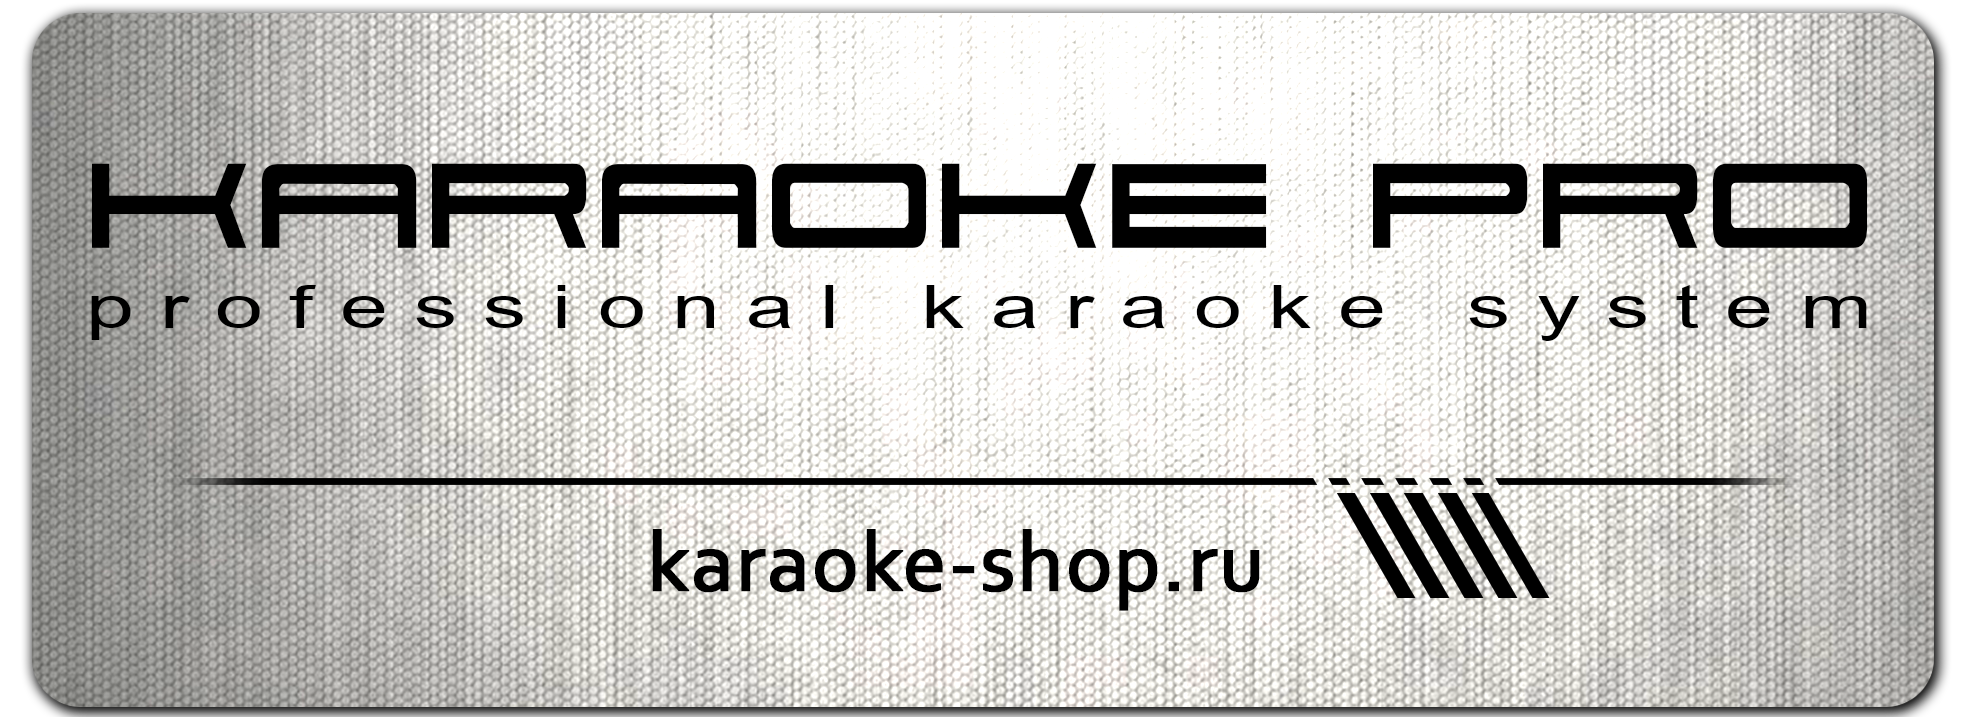 www.karaoke-shop.ru -  -